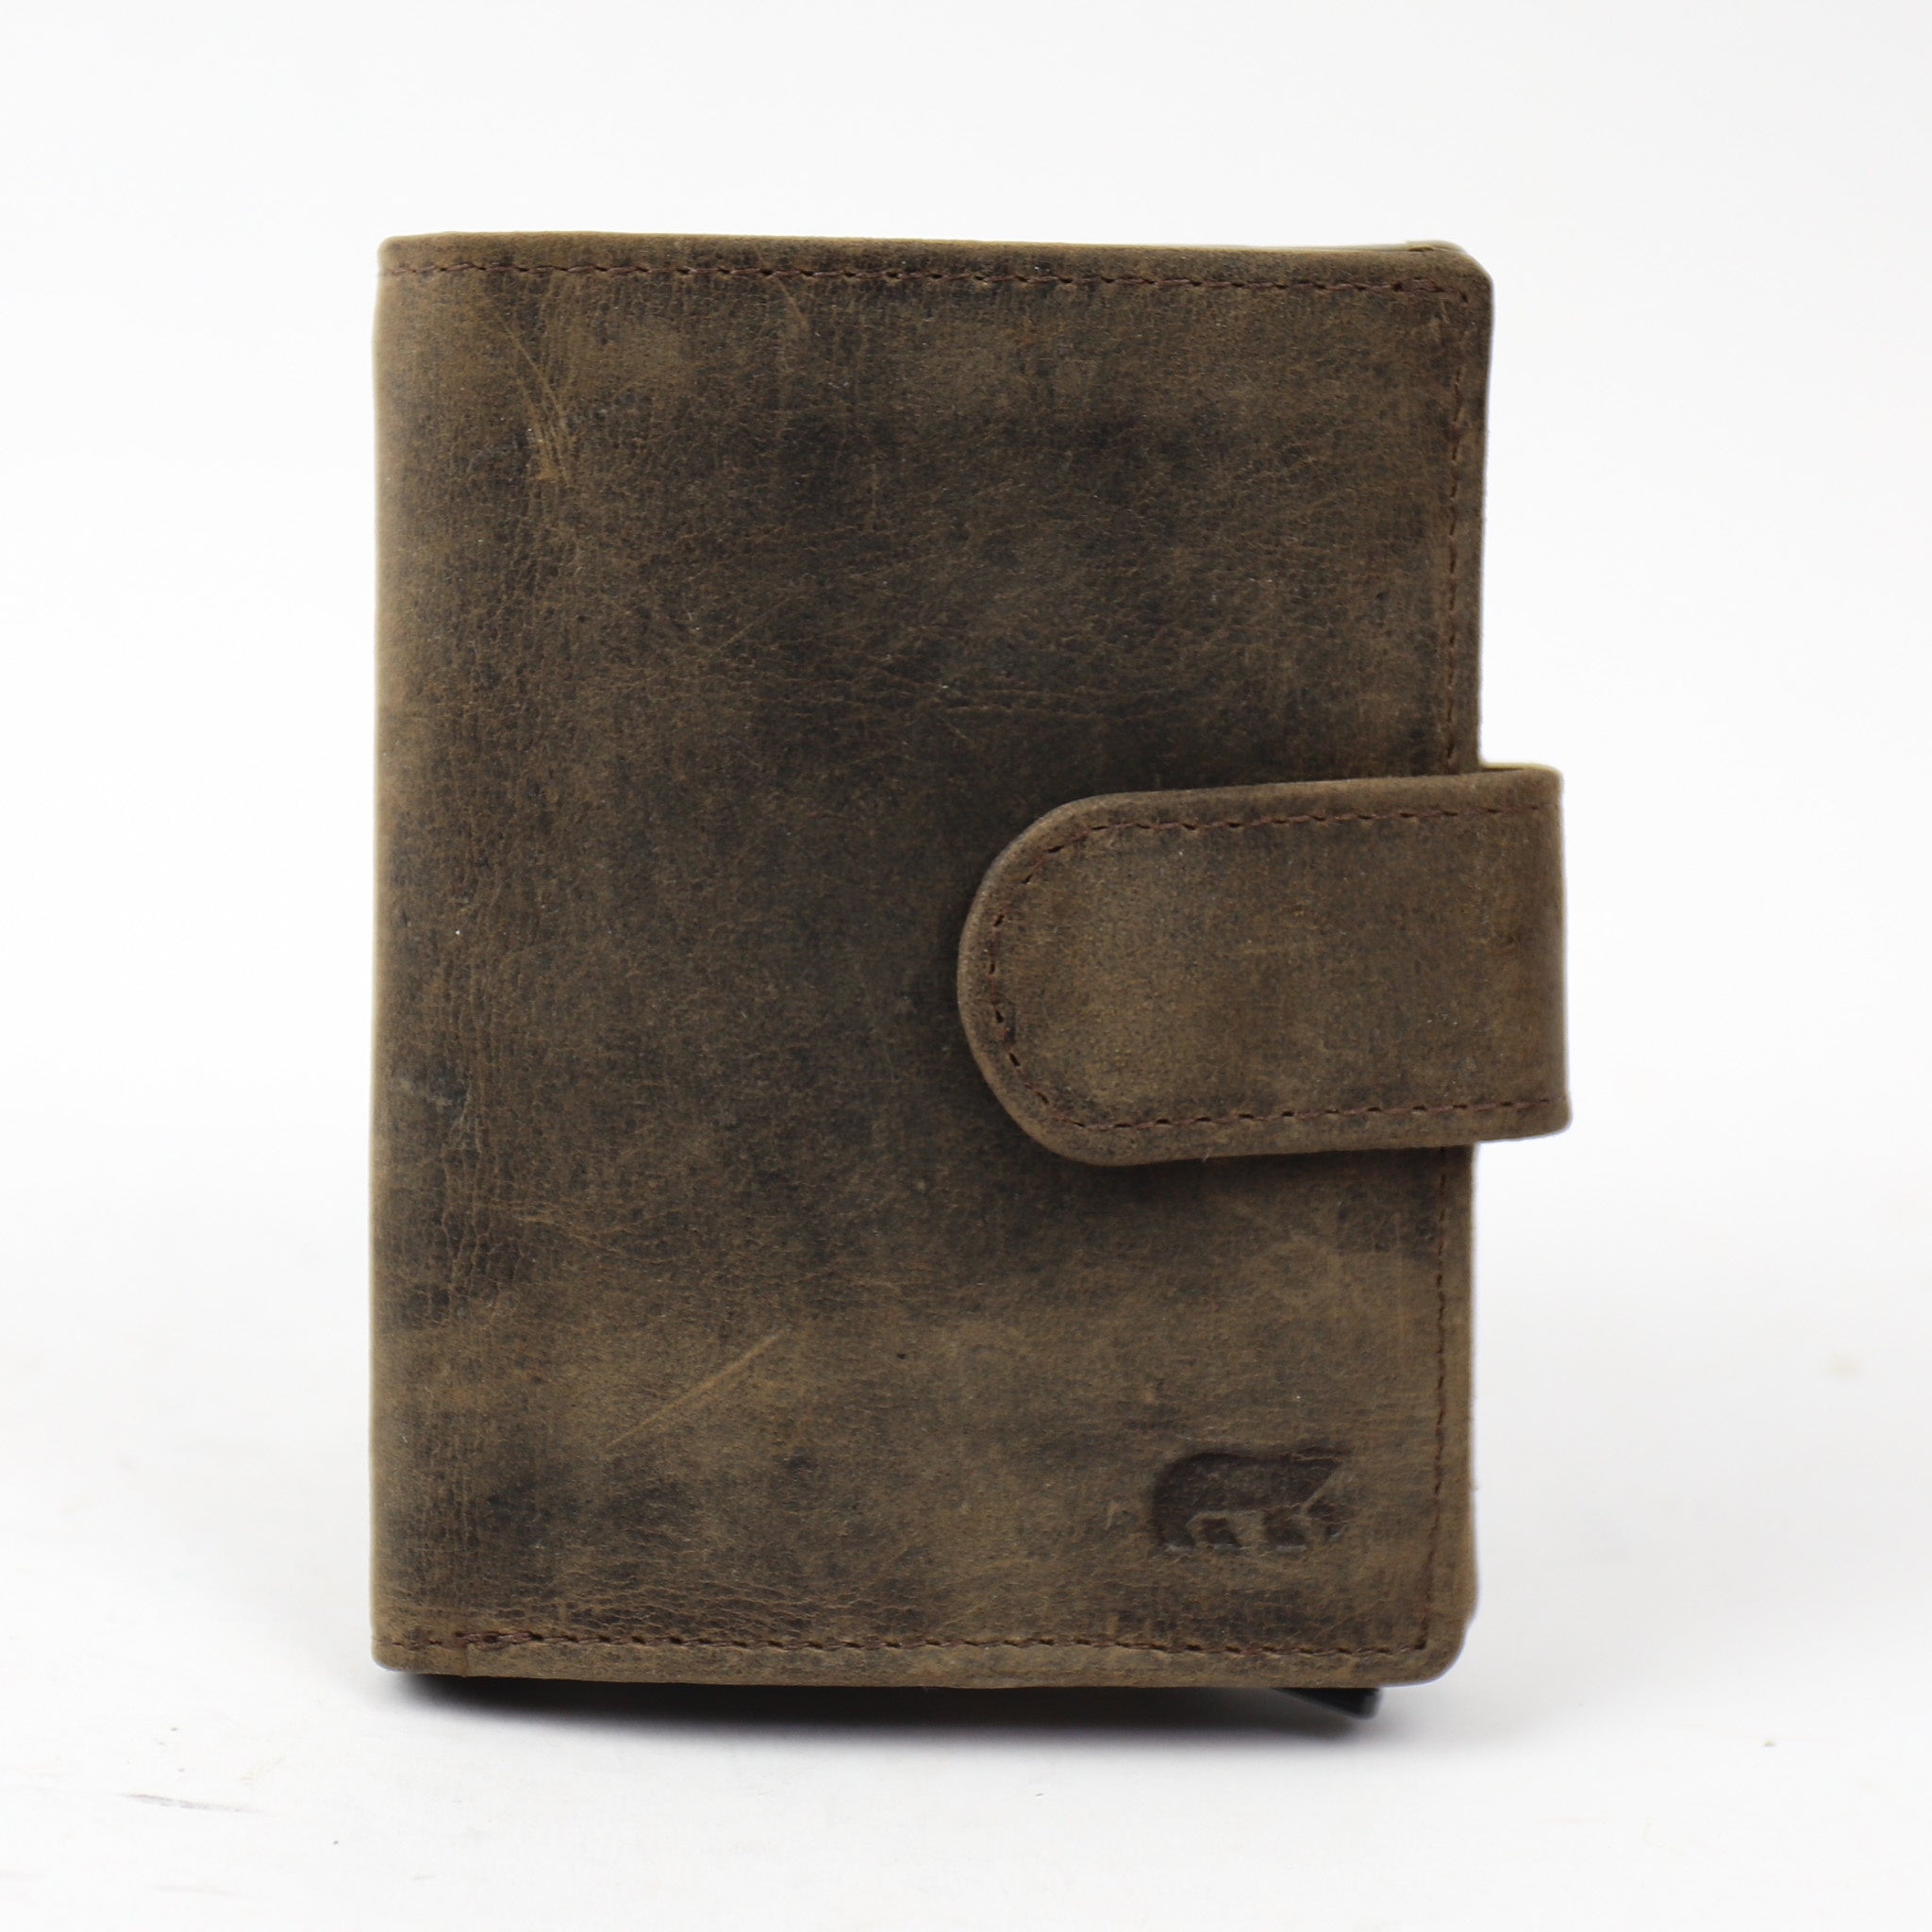 Card holder 'Kris' brown - HD 15253